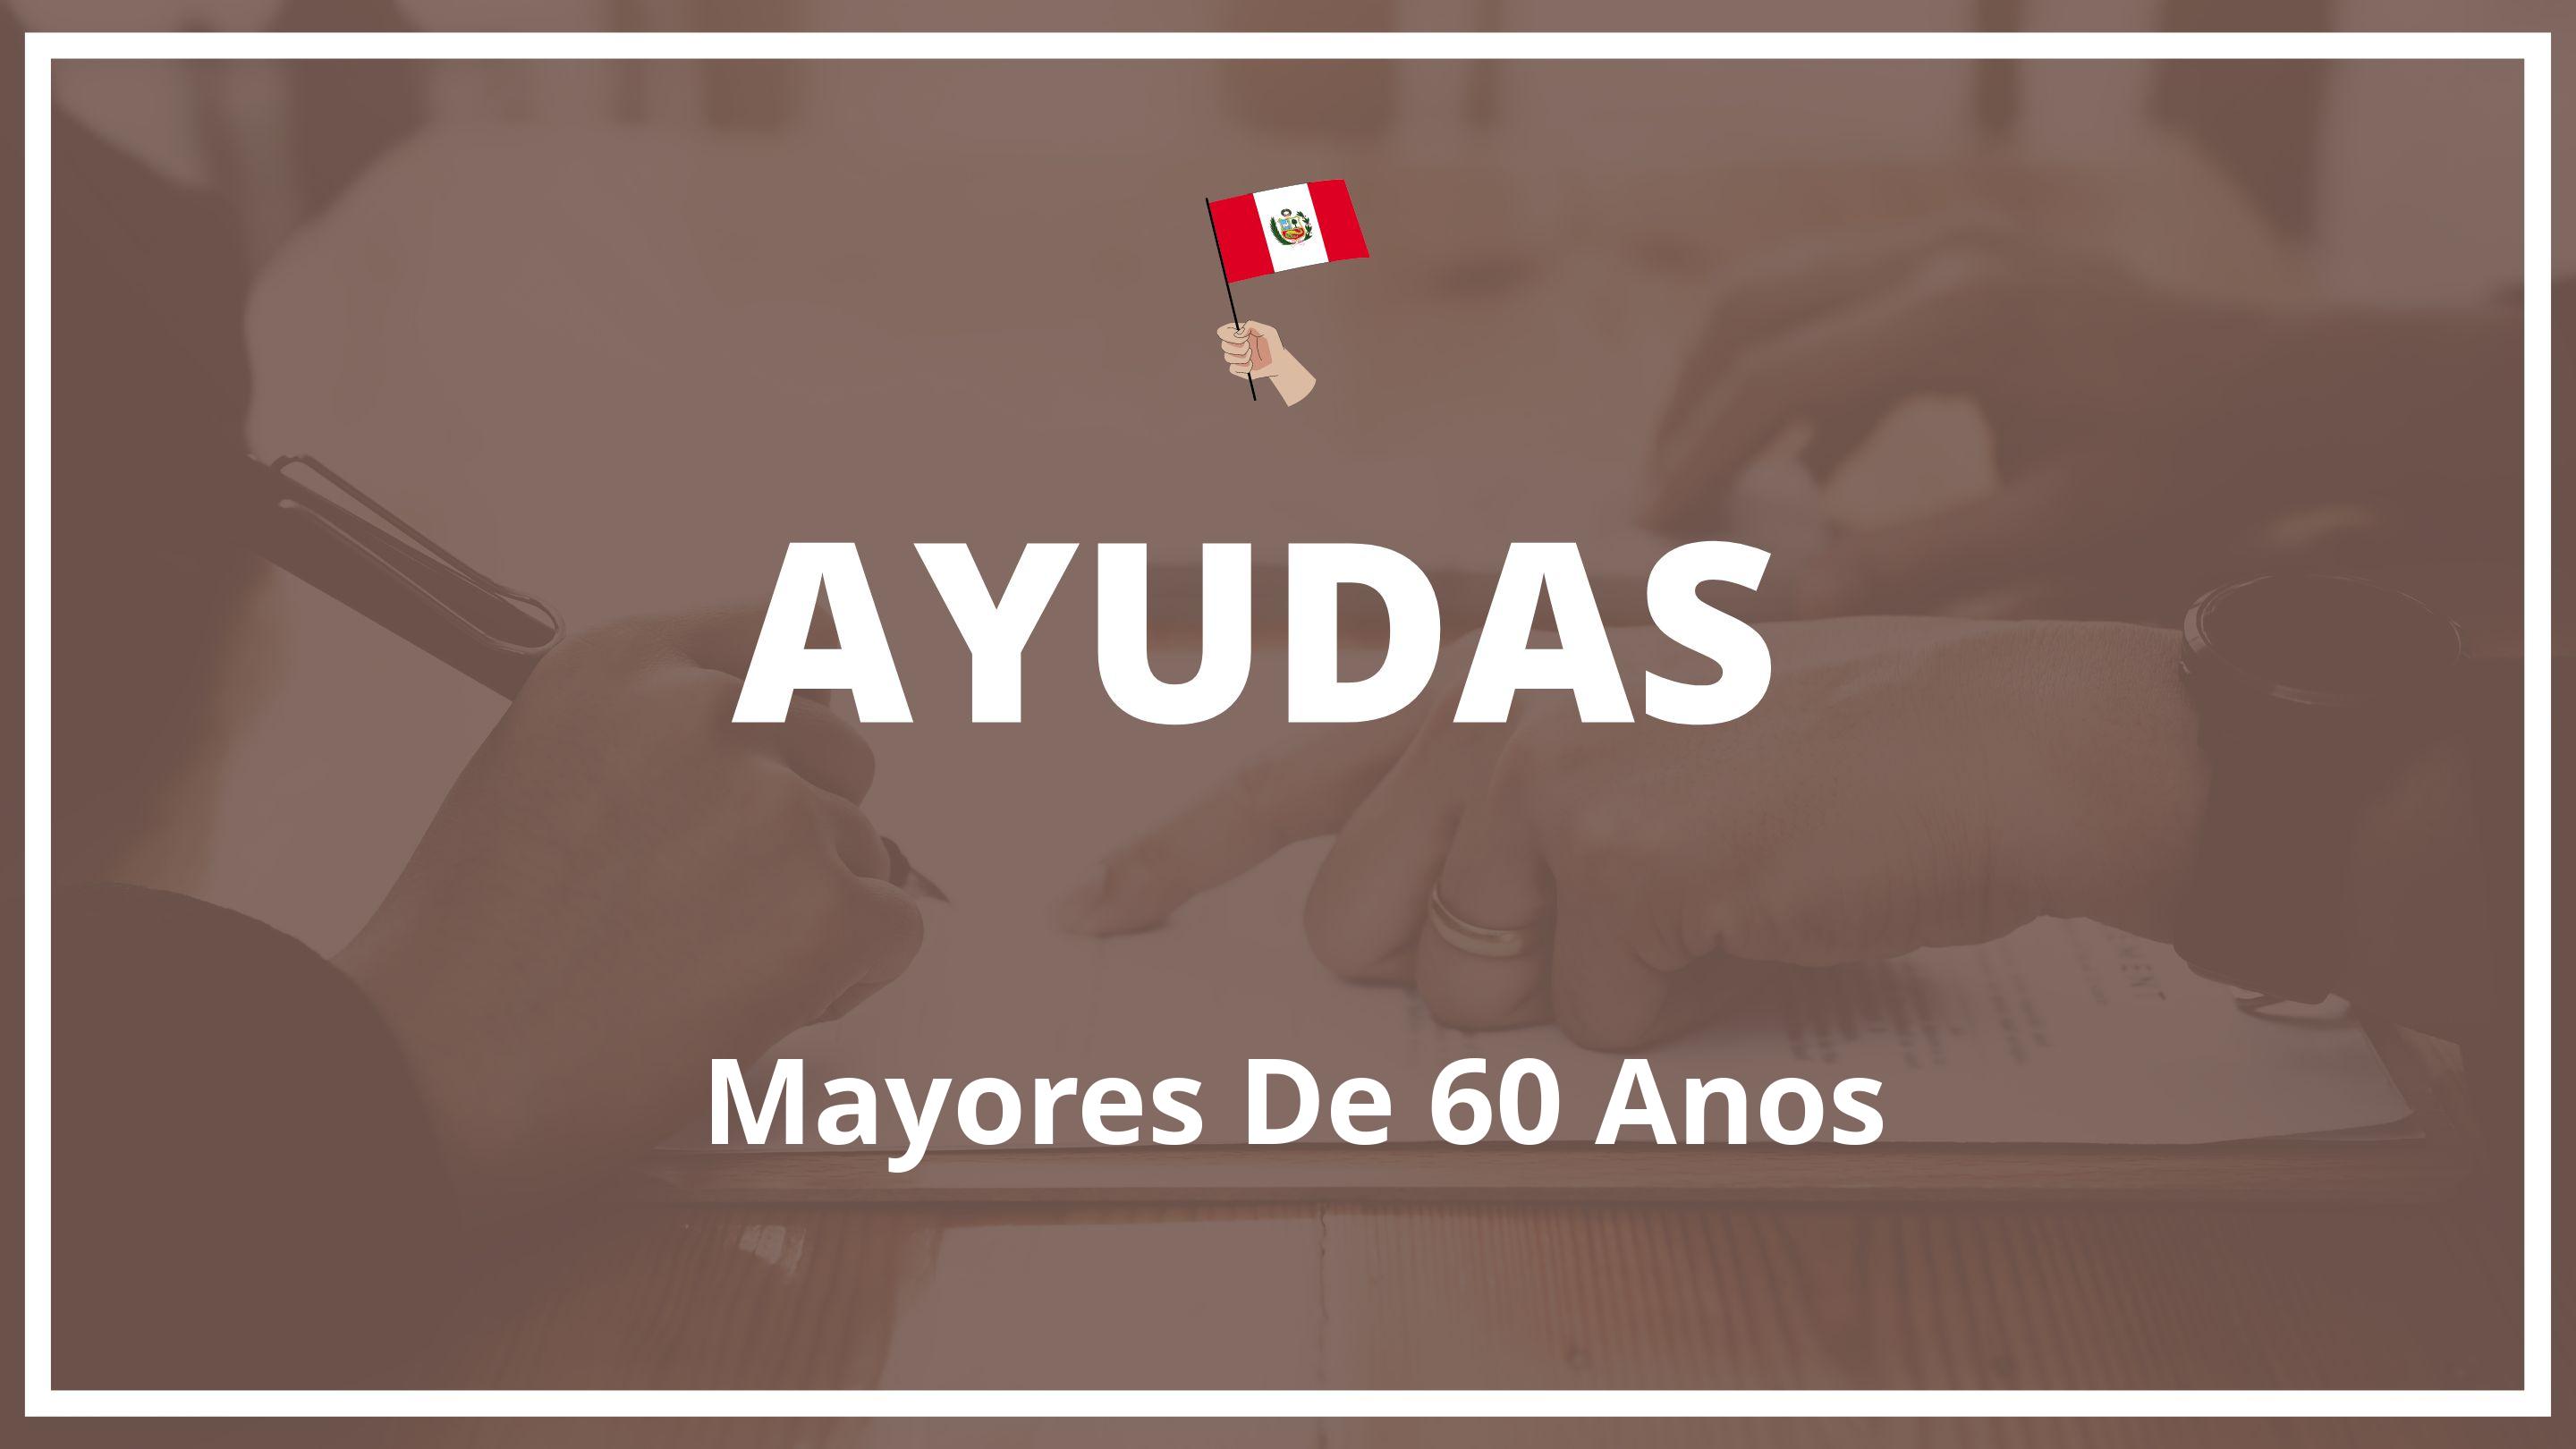 Ayudas para mayores de 60 años Peru